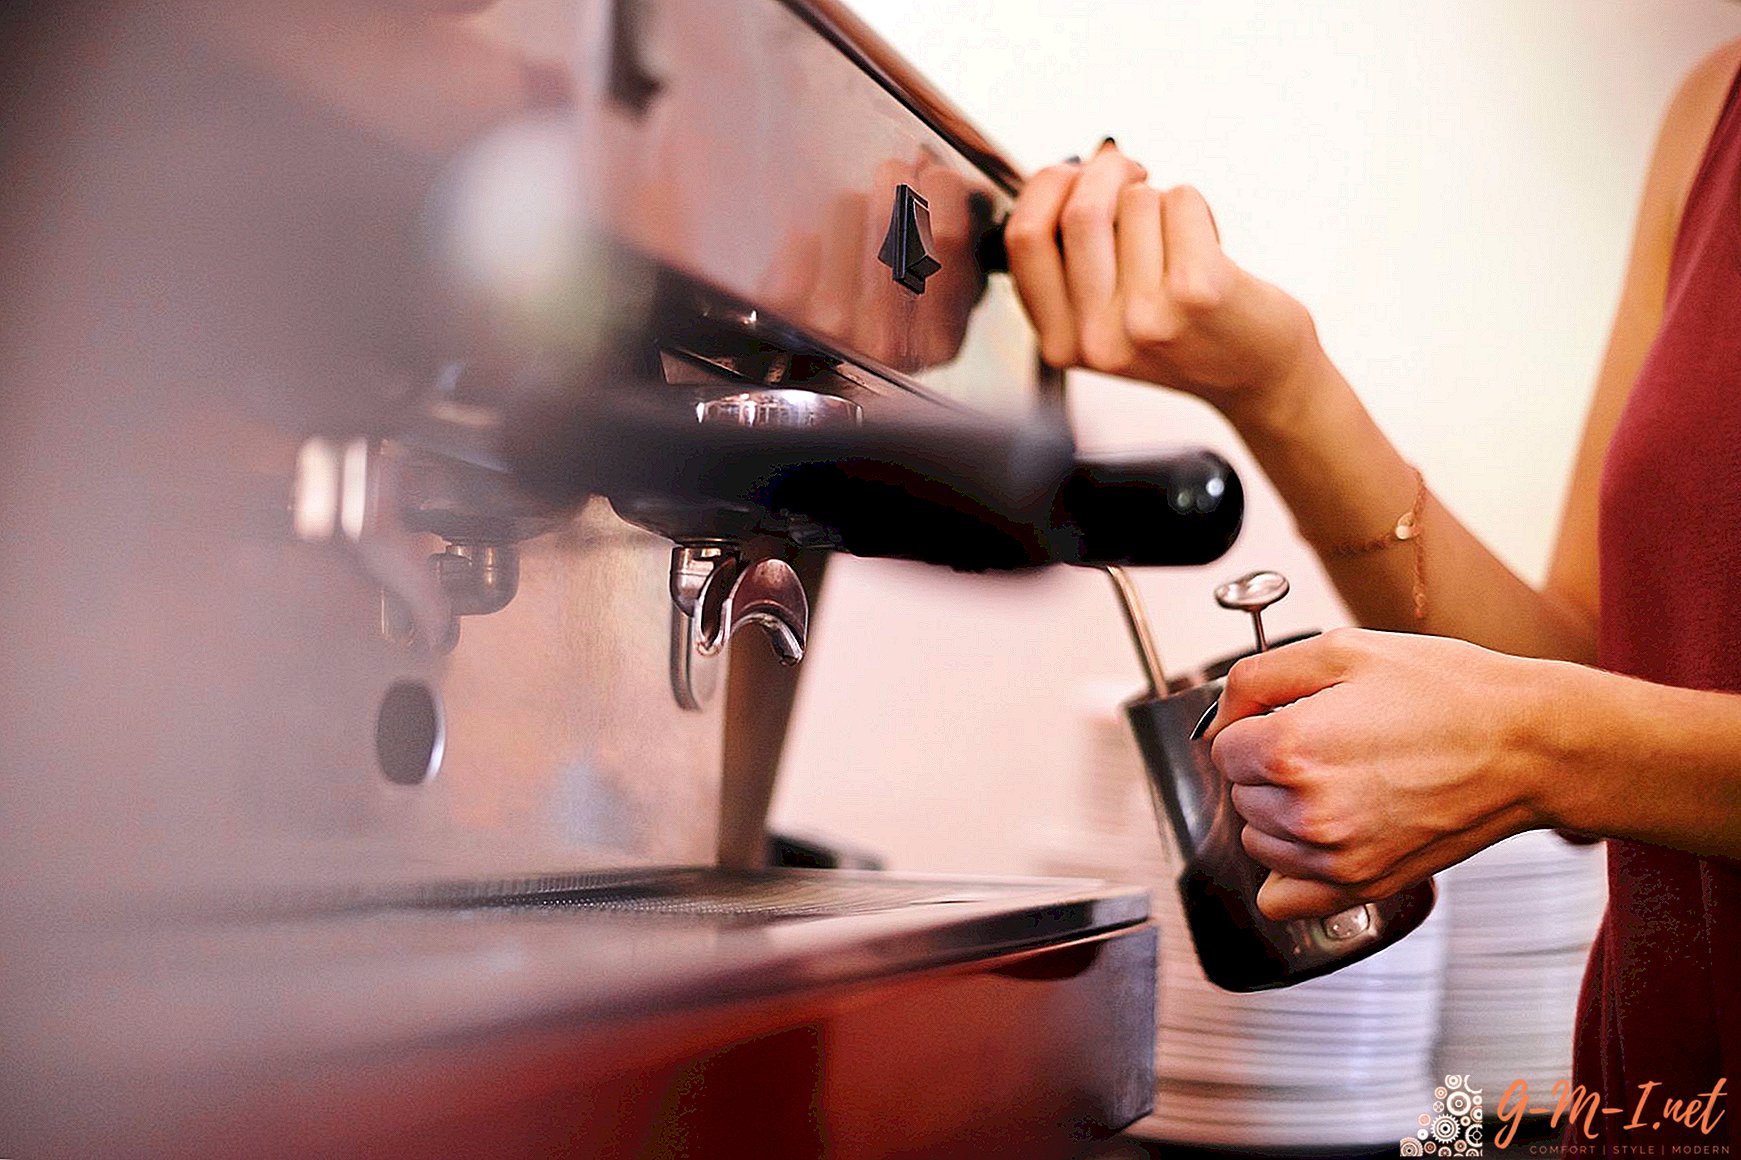 Comment fonctionne une machine à café